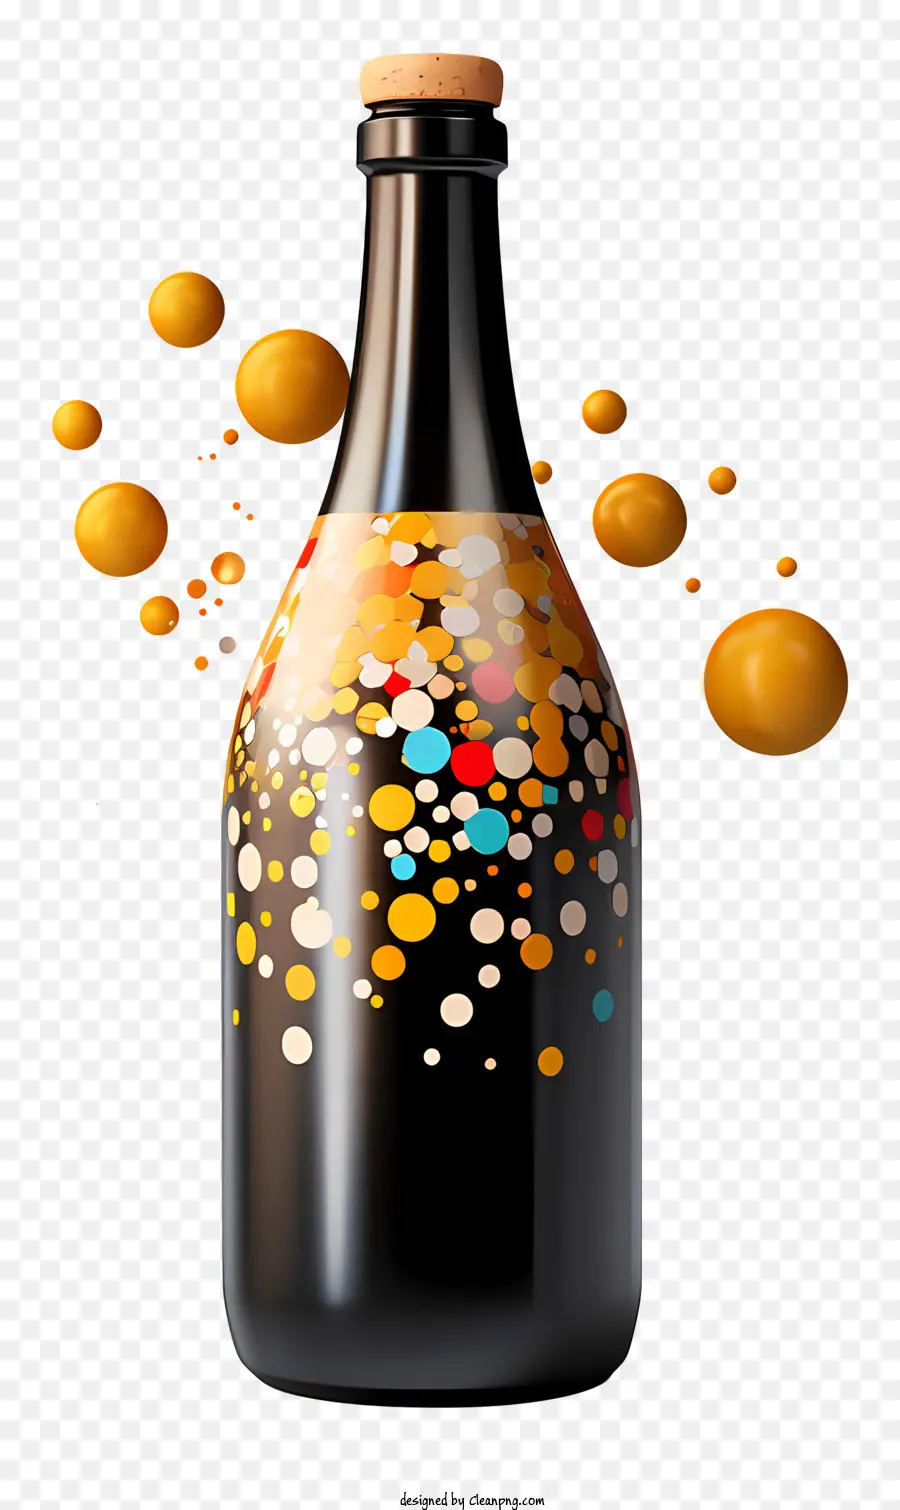 Schwarze Flasche weiße Etikett mehrfarbige Blasen transparente flüssige farbenfrohe Blasen - Hochauflösend detailliertes Bild einer farbenfrohen, blasengefüllten Flasche